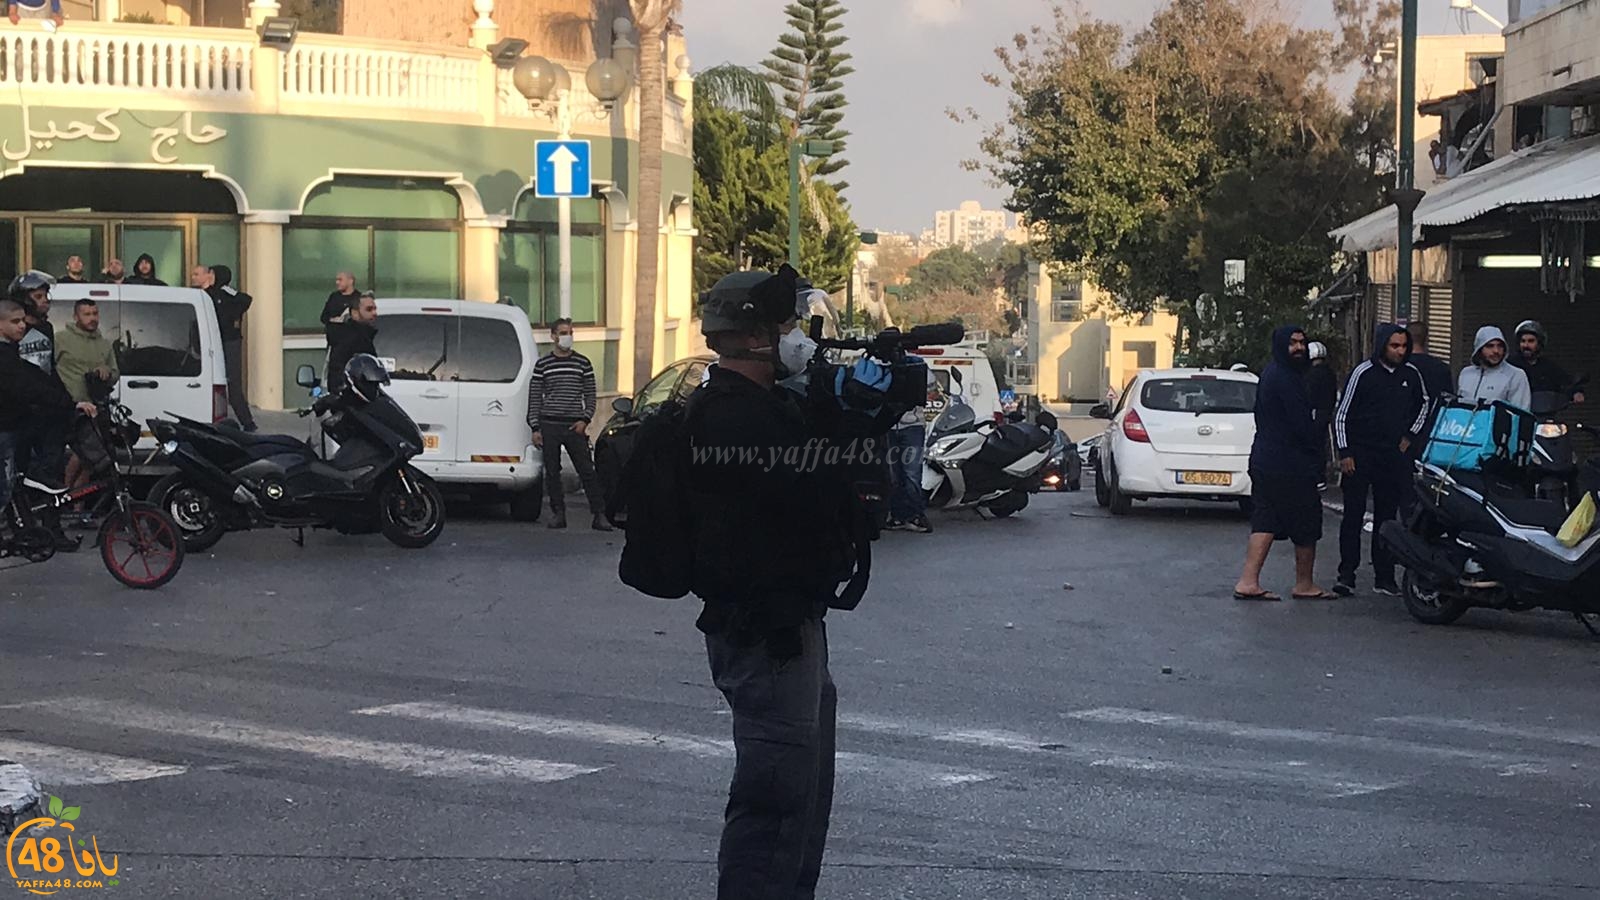 فيديو: مروحية تابعة للشرطة تُحلق في سماء مدينة يافا 